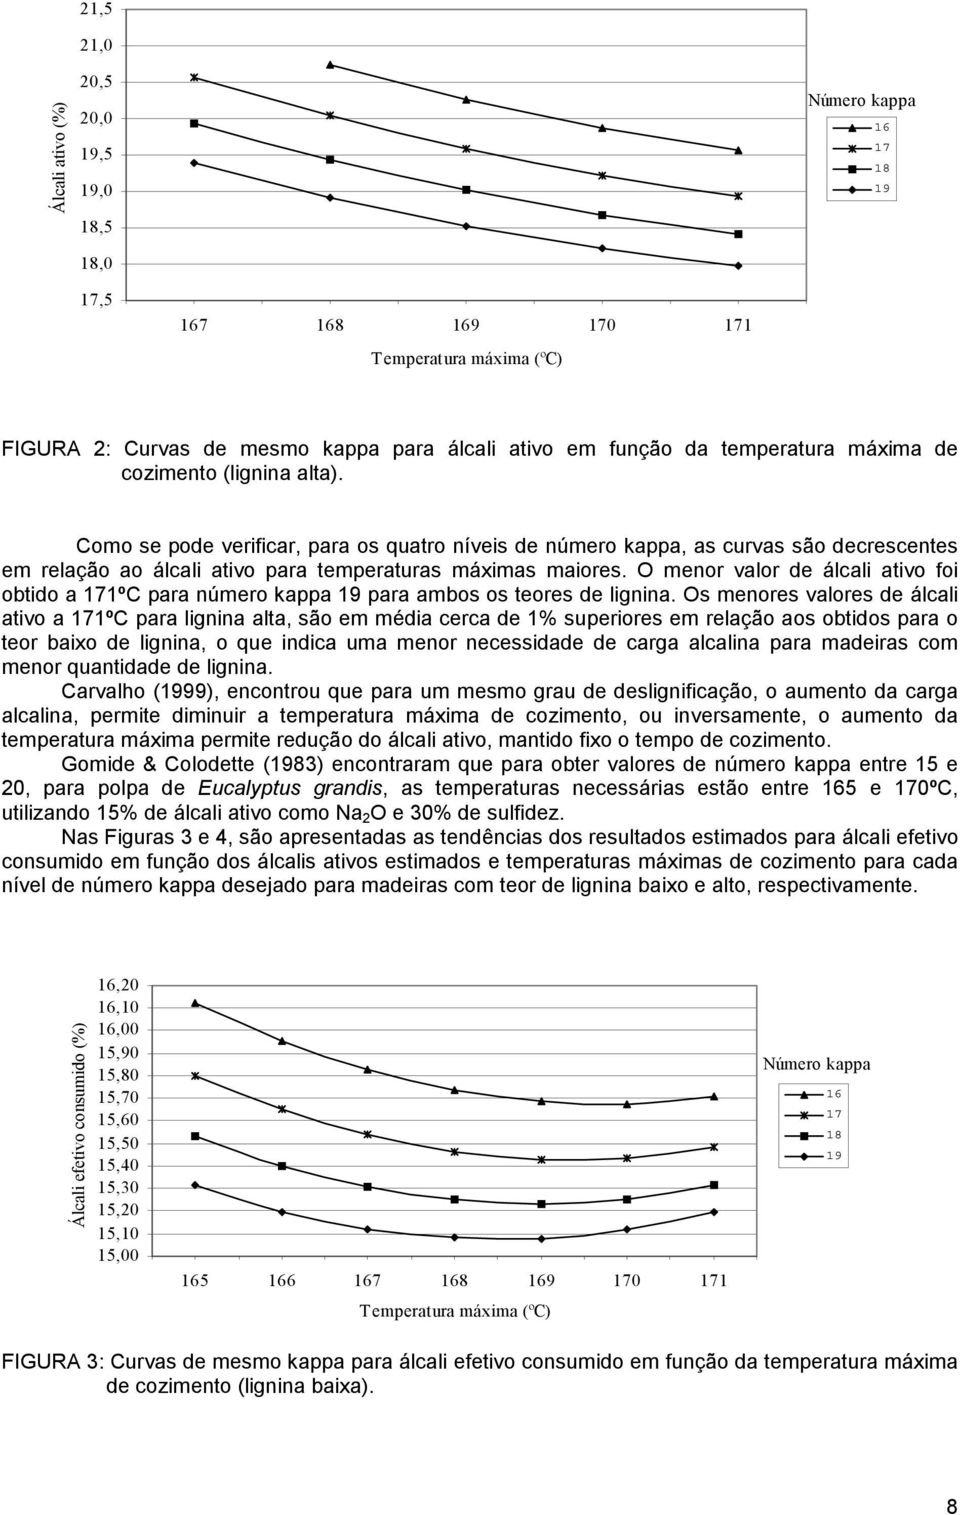 O menor valor de álcali ativo foi obtido a 1ºC para número kappa para ambos os teores de lignina.